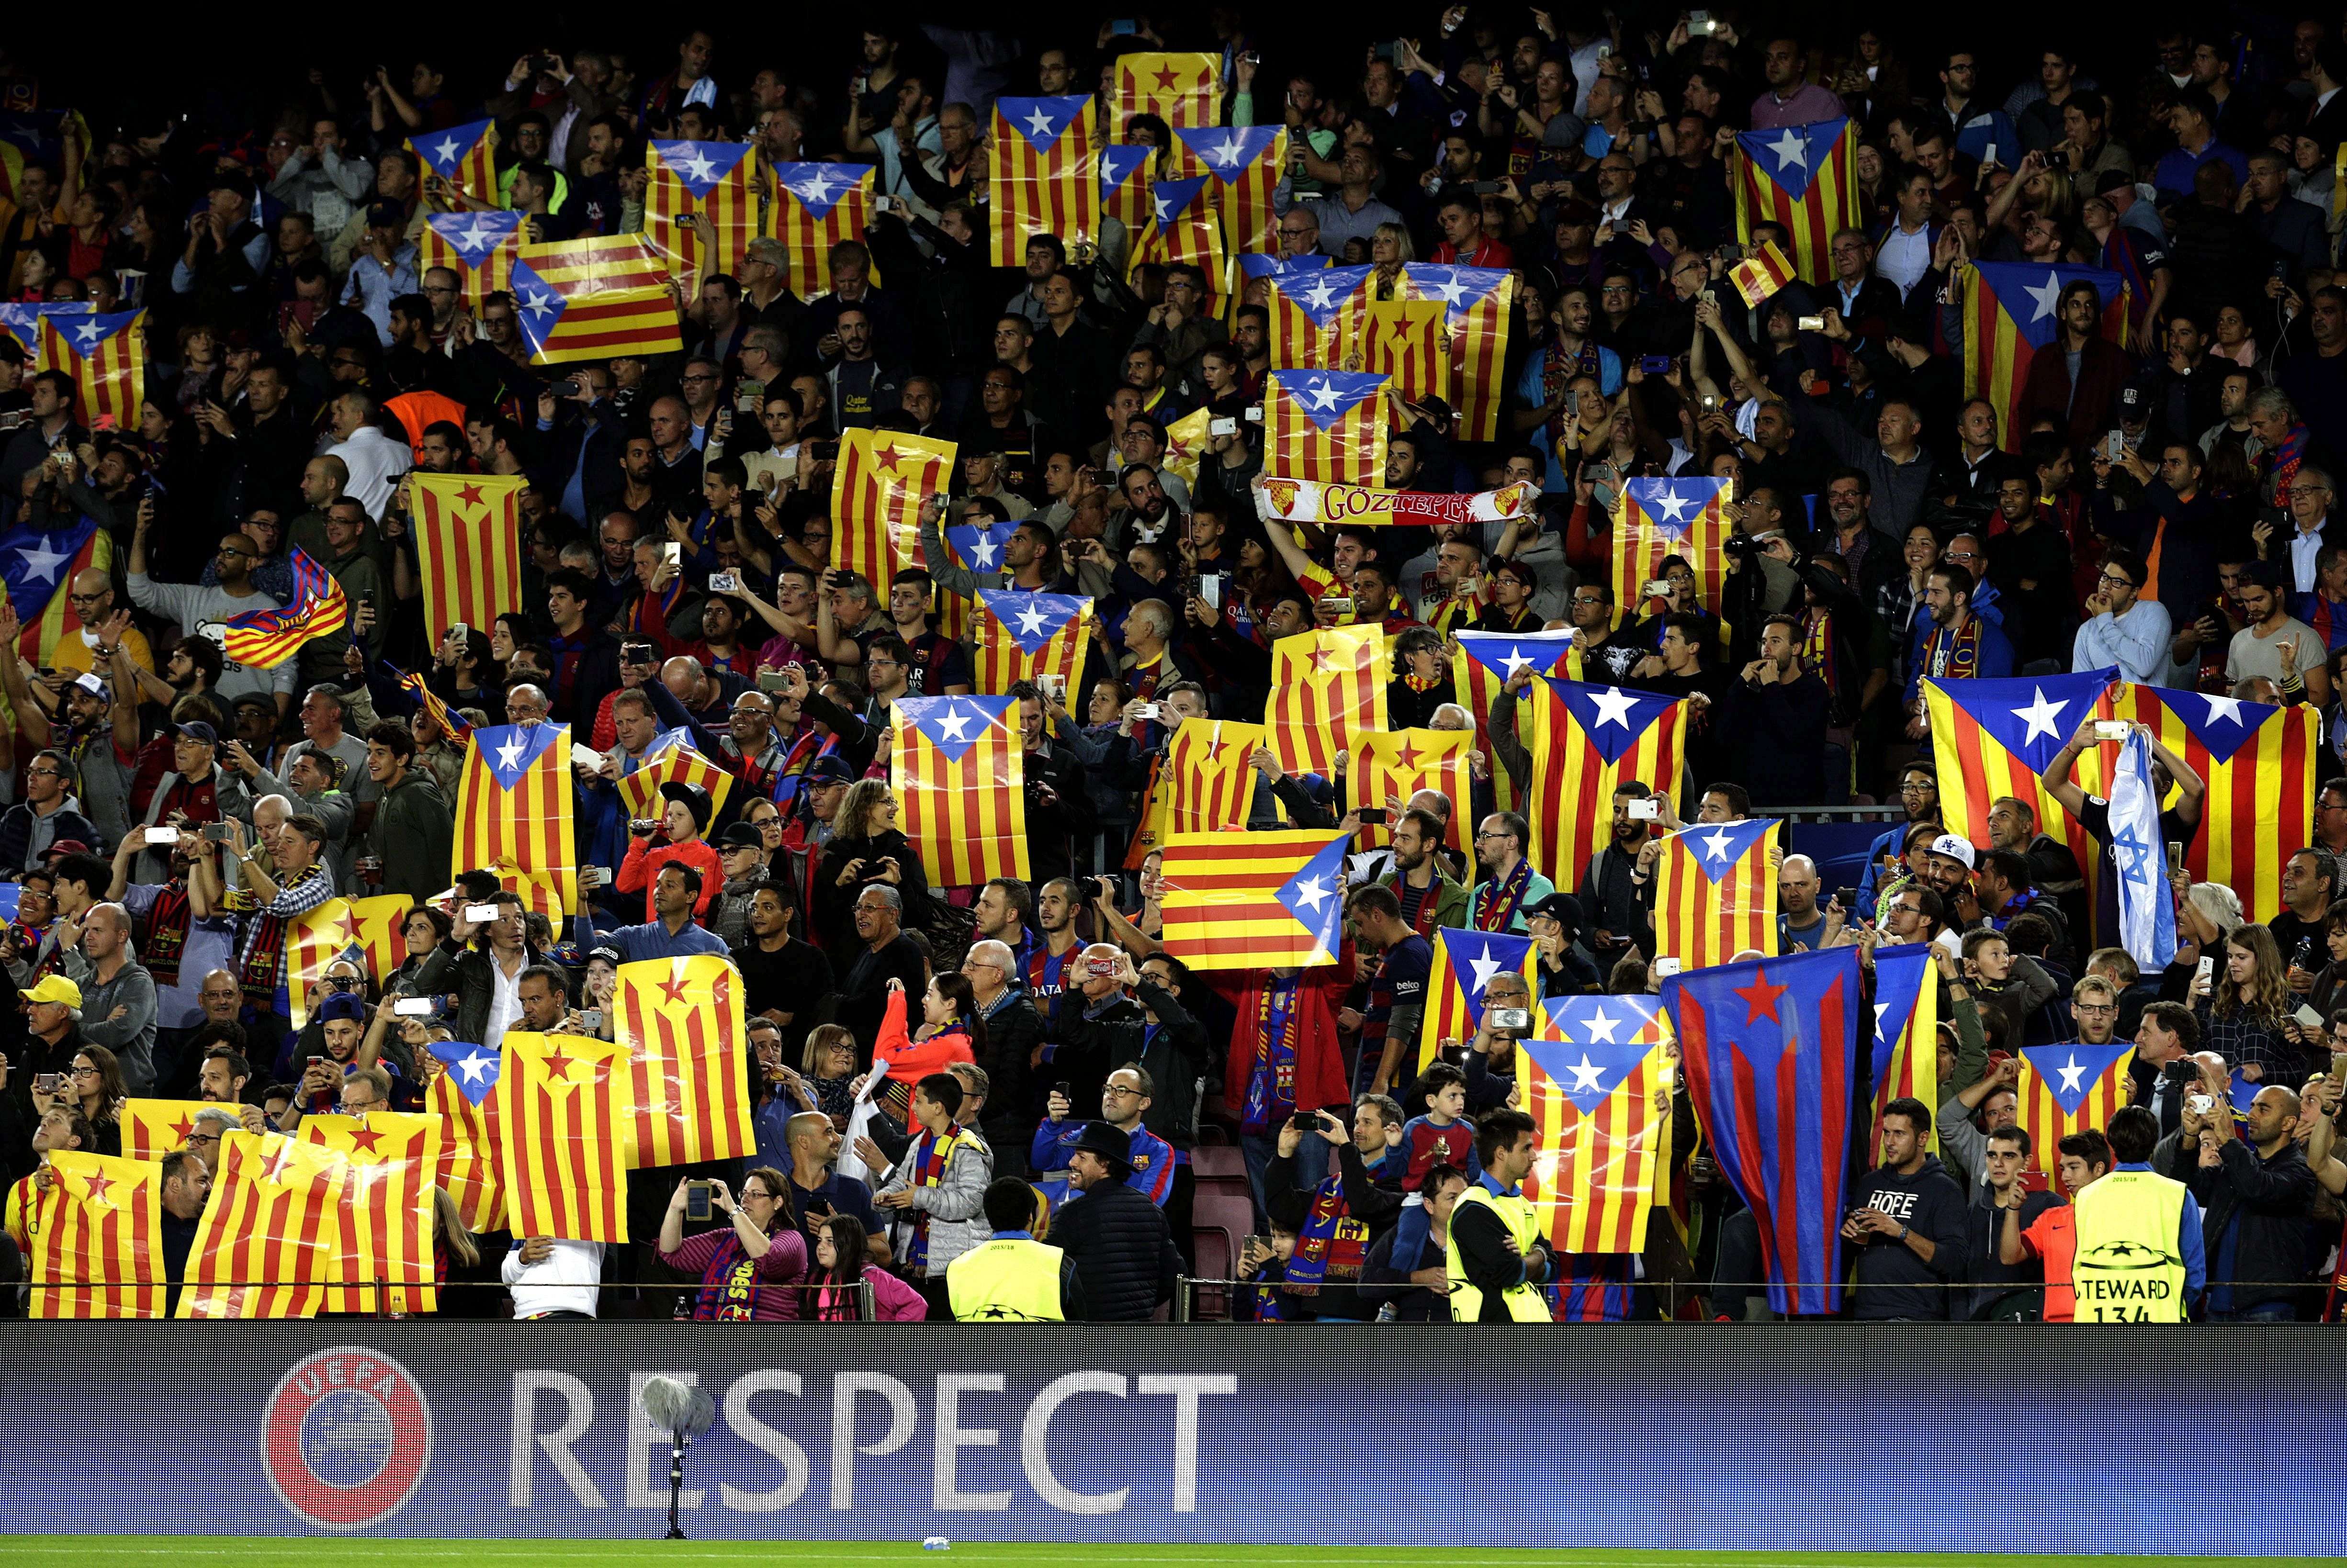 Laporta recupera 'Els Segadors', que sonará en el Camp Nou durante el Barça-Real Madrid